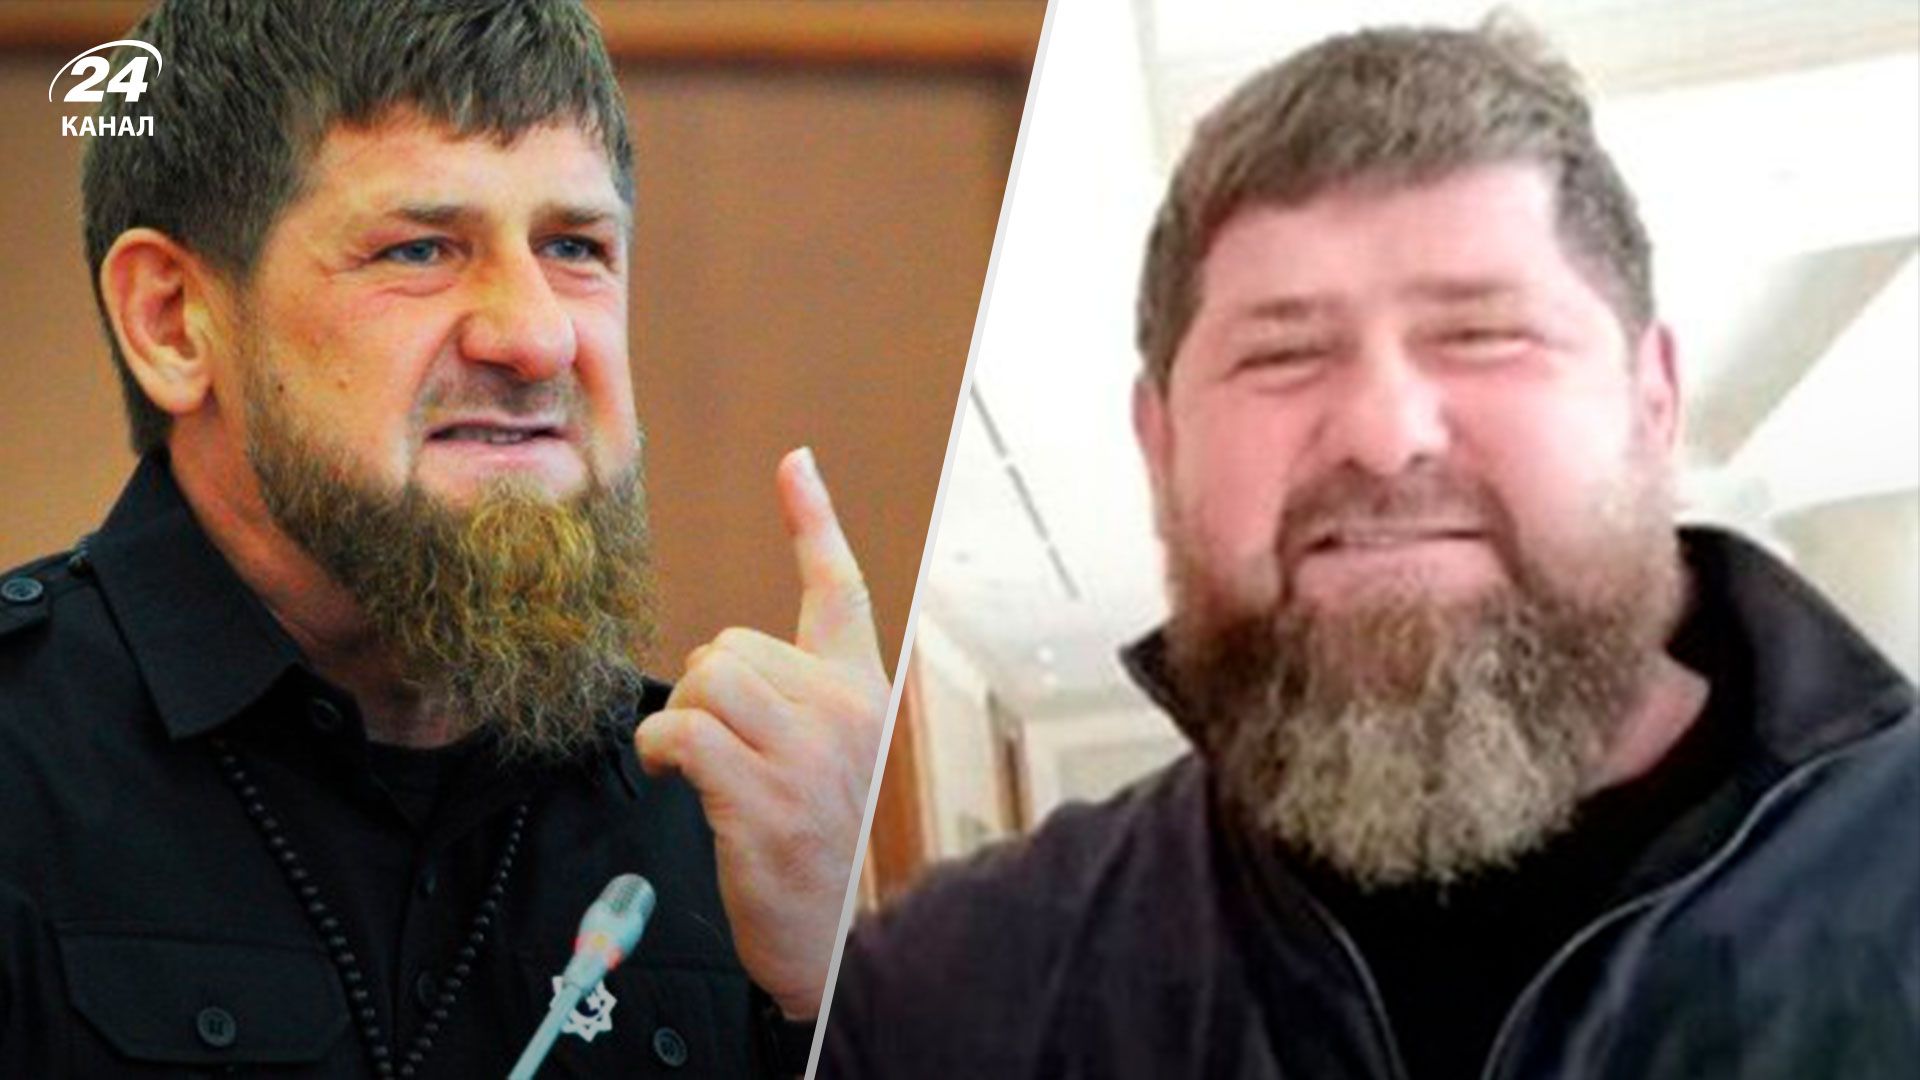 Кадыров болеет - чеченец предположил, что с ним произошло - 24 Канал